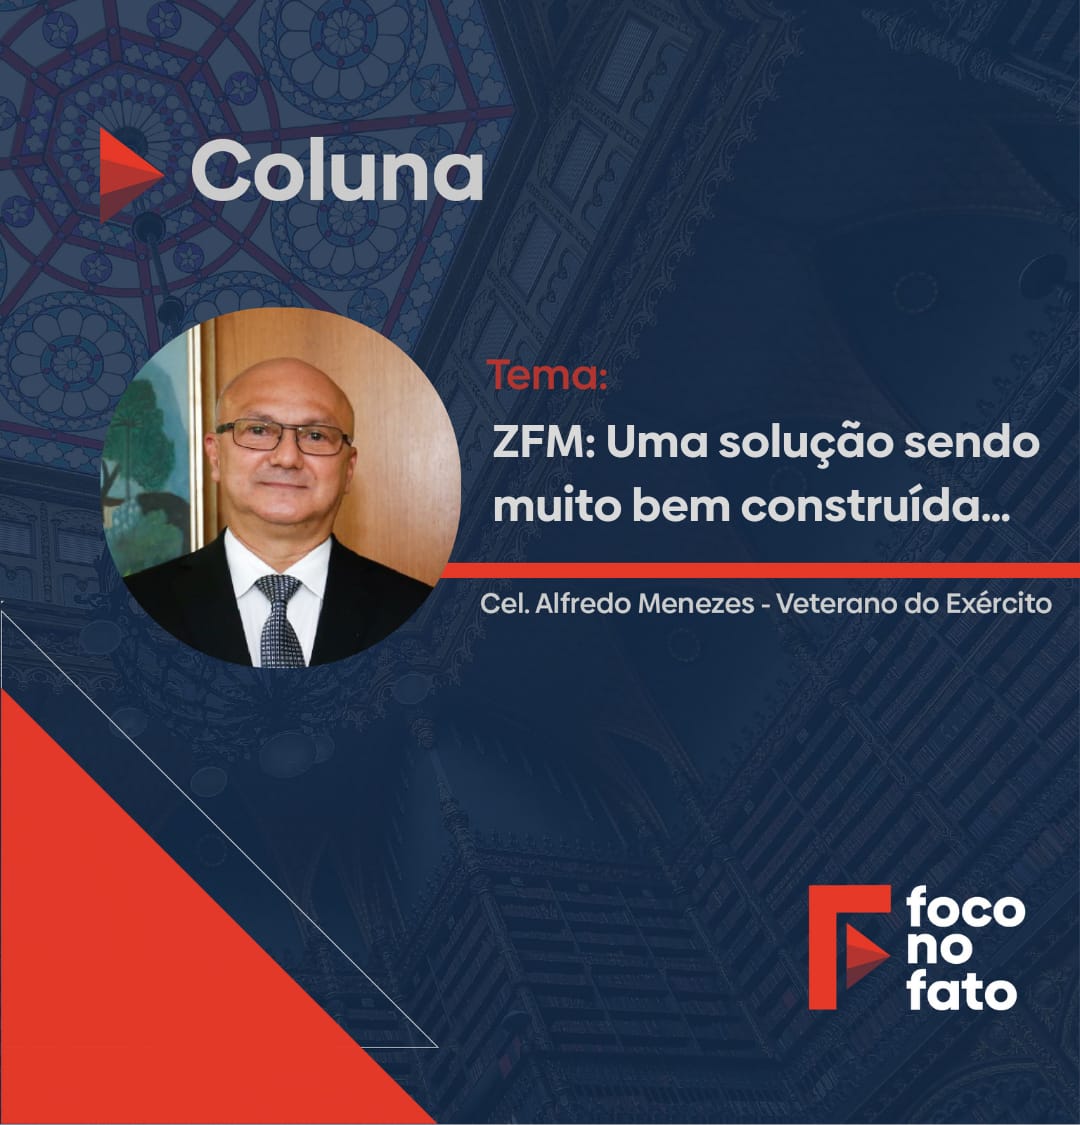 Coluna de Coronel Menezes. ZFM: Uma solução sendo muito bem construída 